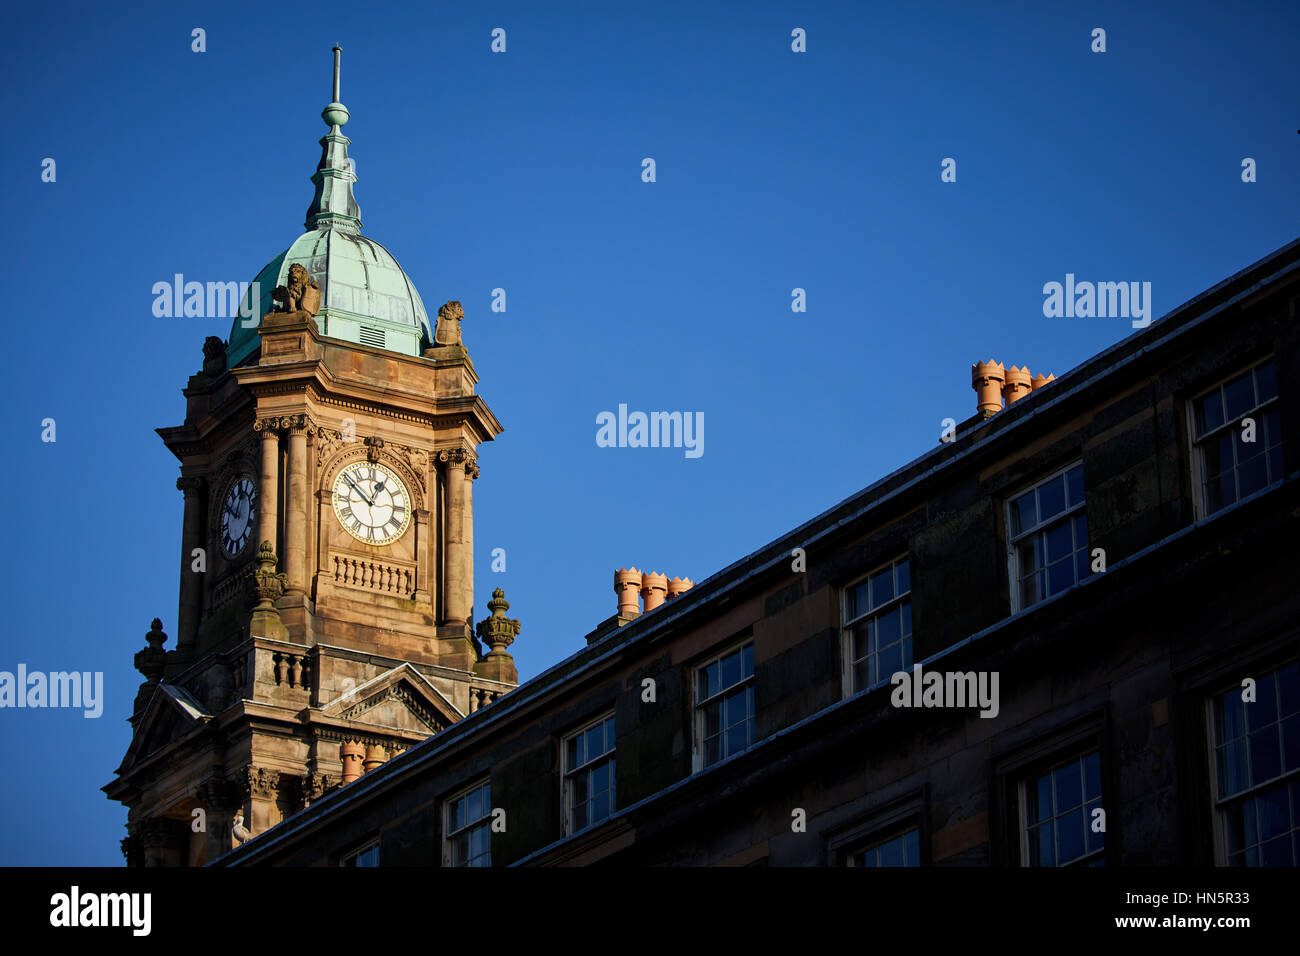 Blauer Himmel sonniger Tag am Uhrturm Birkenhead Wahrzeichen außen Rathauses in Hamilton Square in Wallasey, Merseyside, Wirral, England, UK. Stockfoto